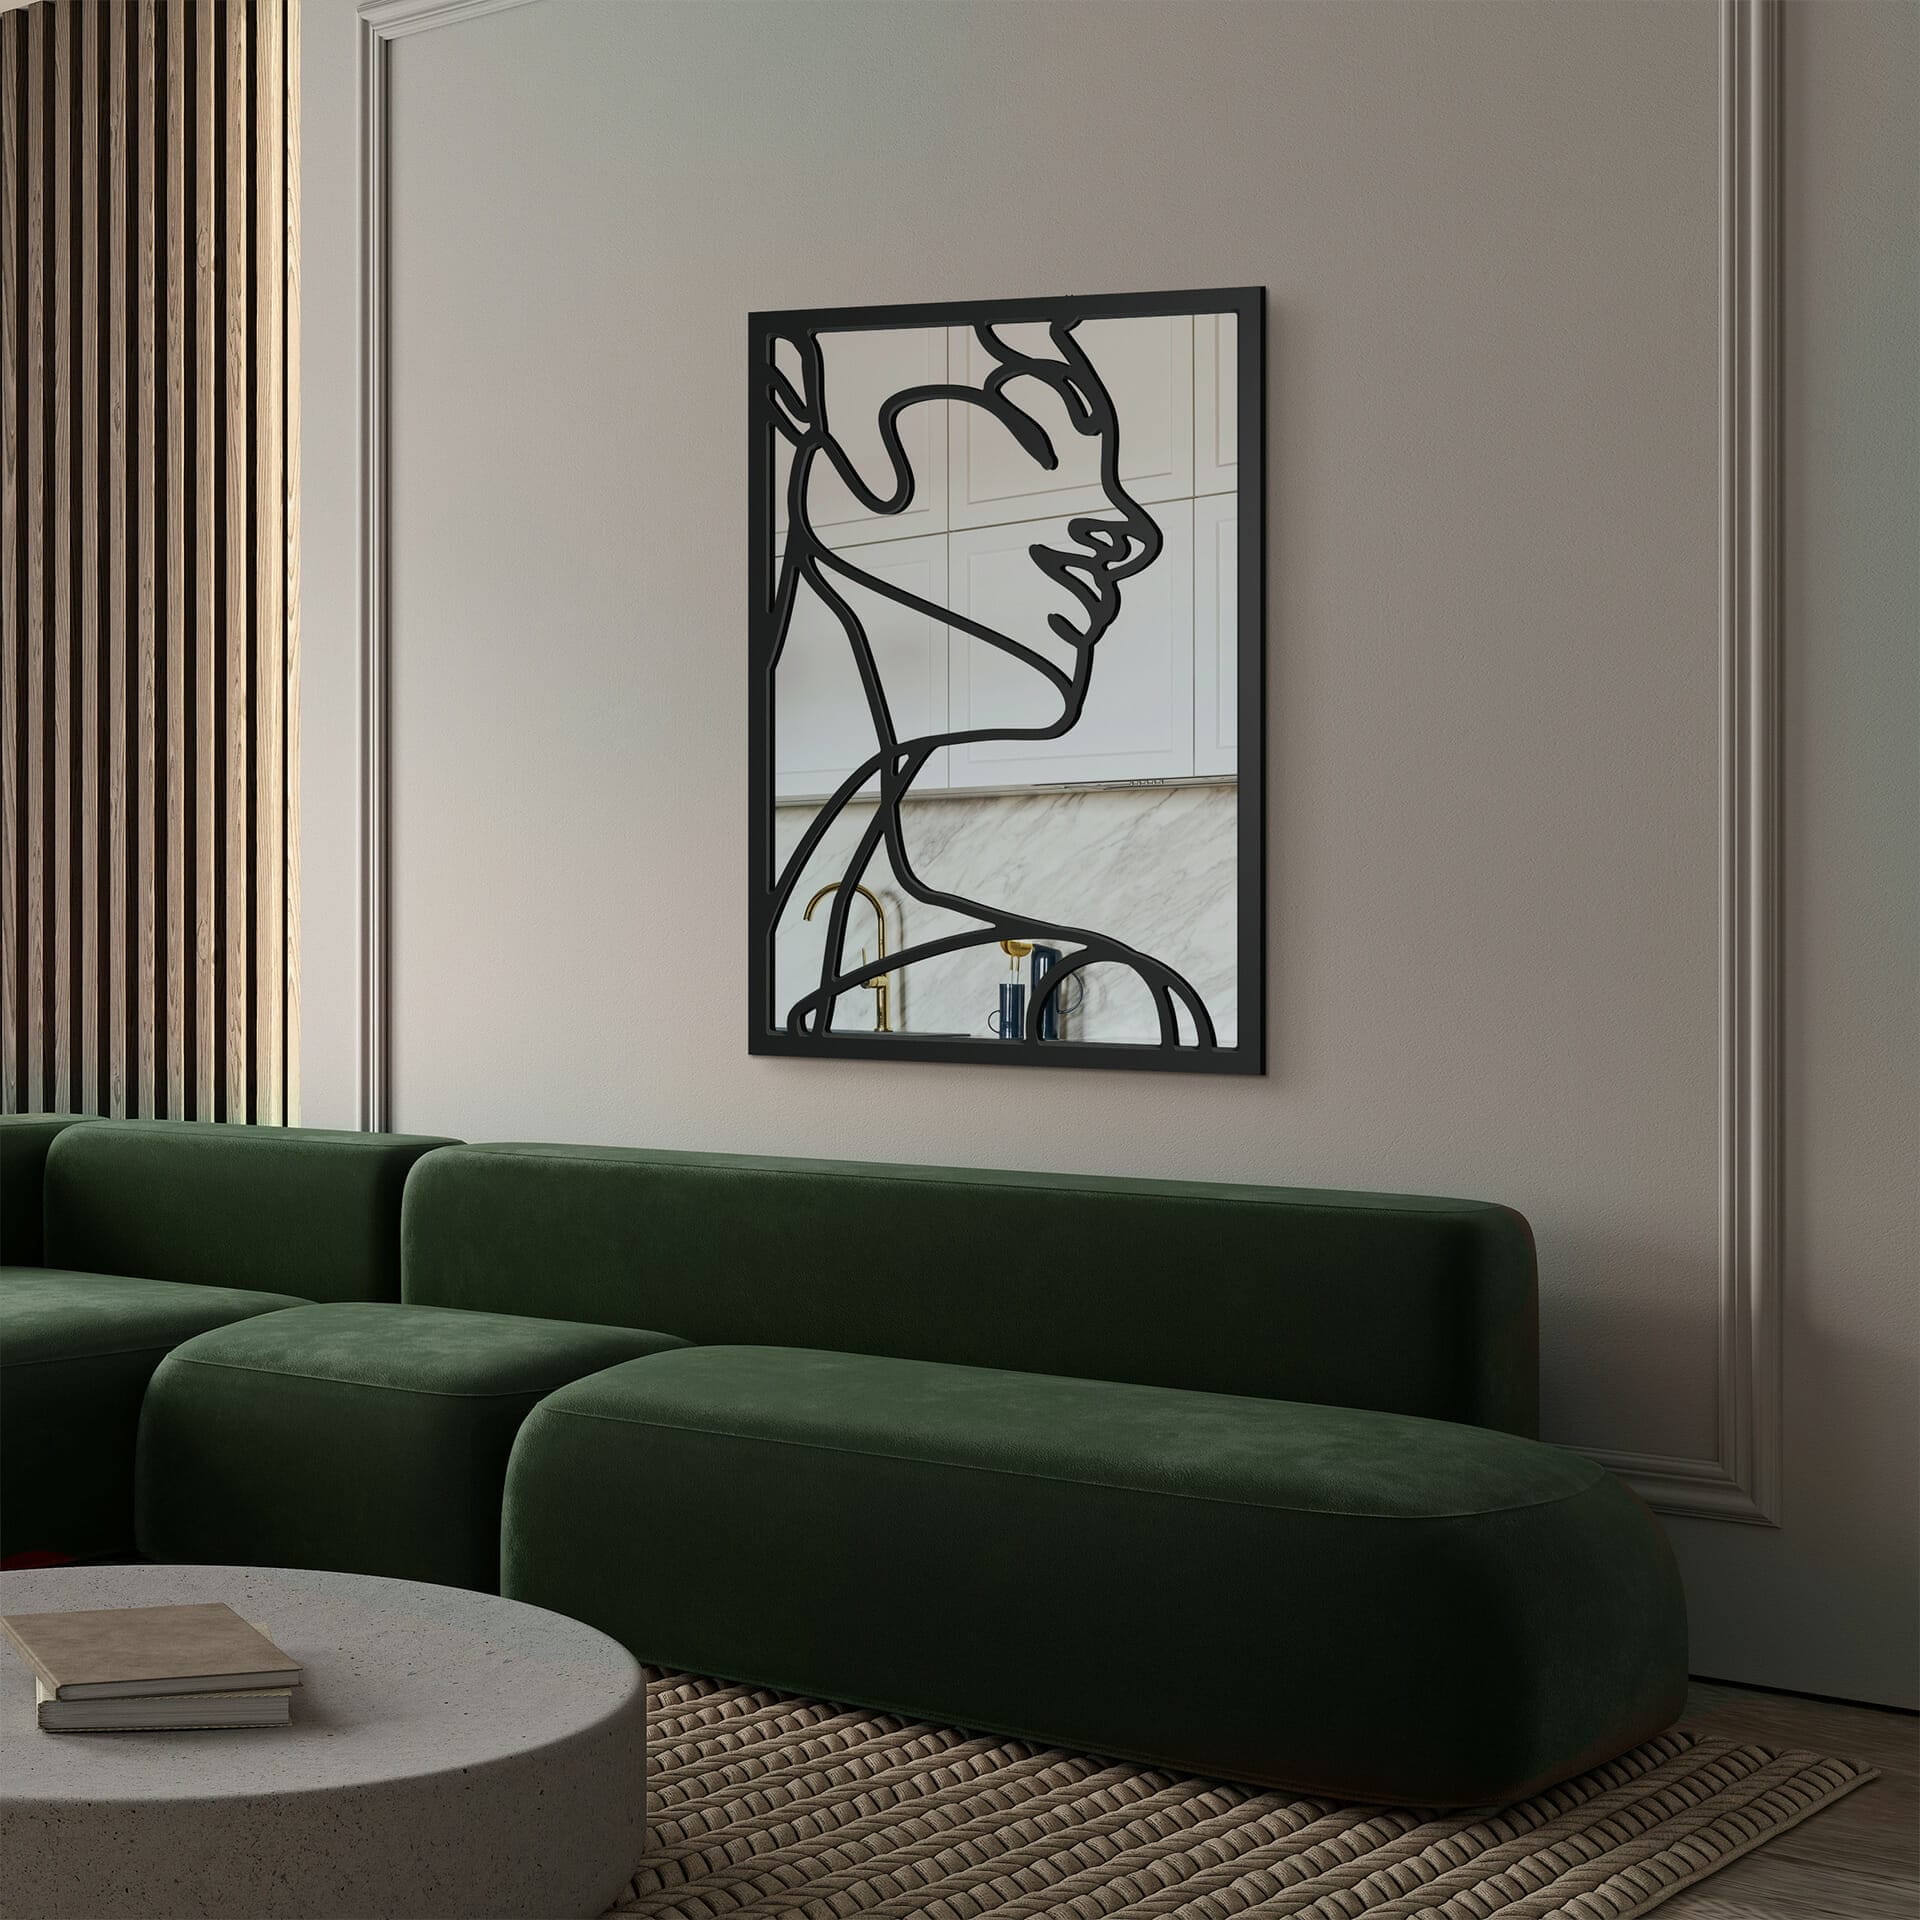 Mirror in a luxury living room - Svaja